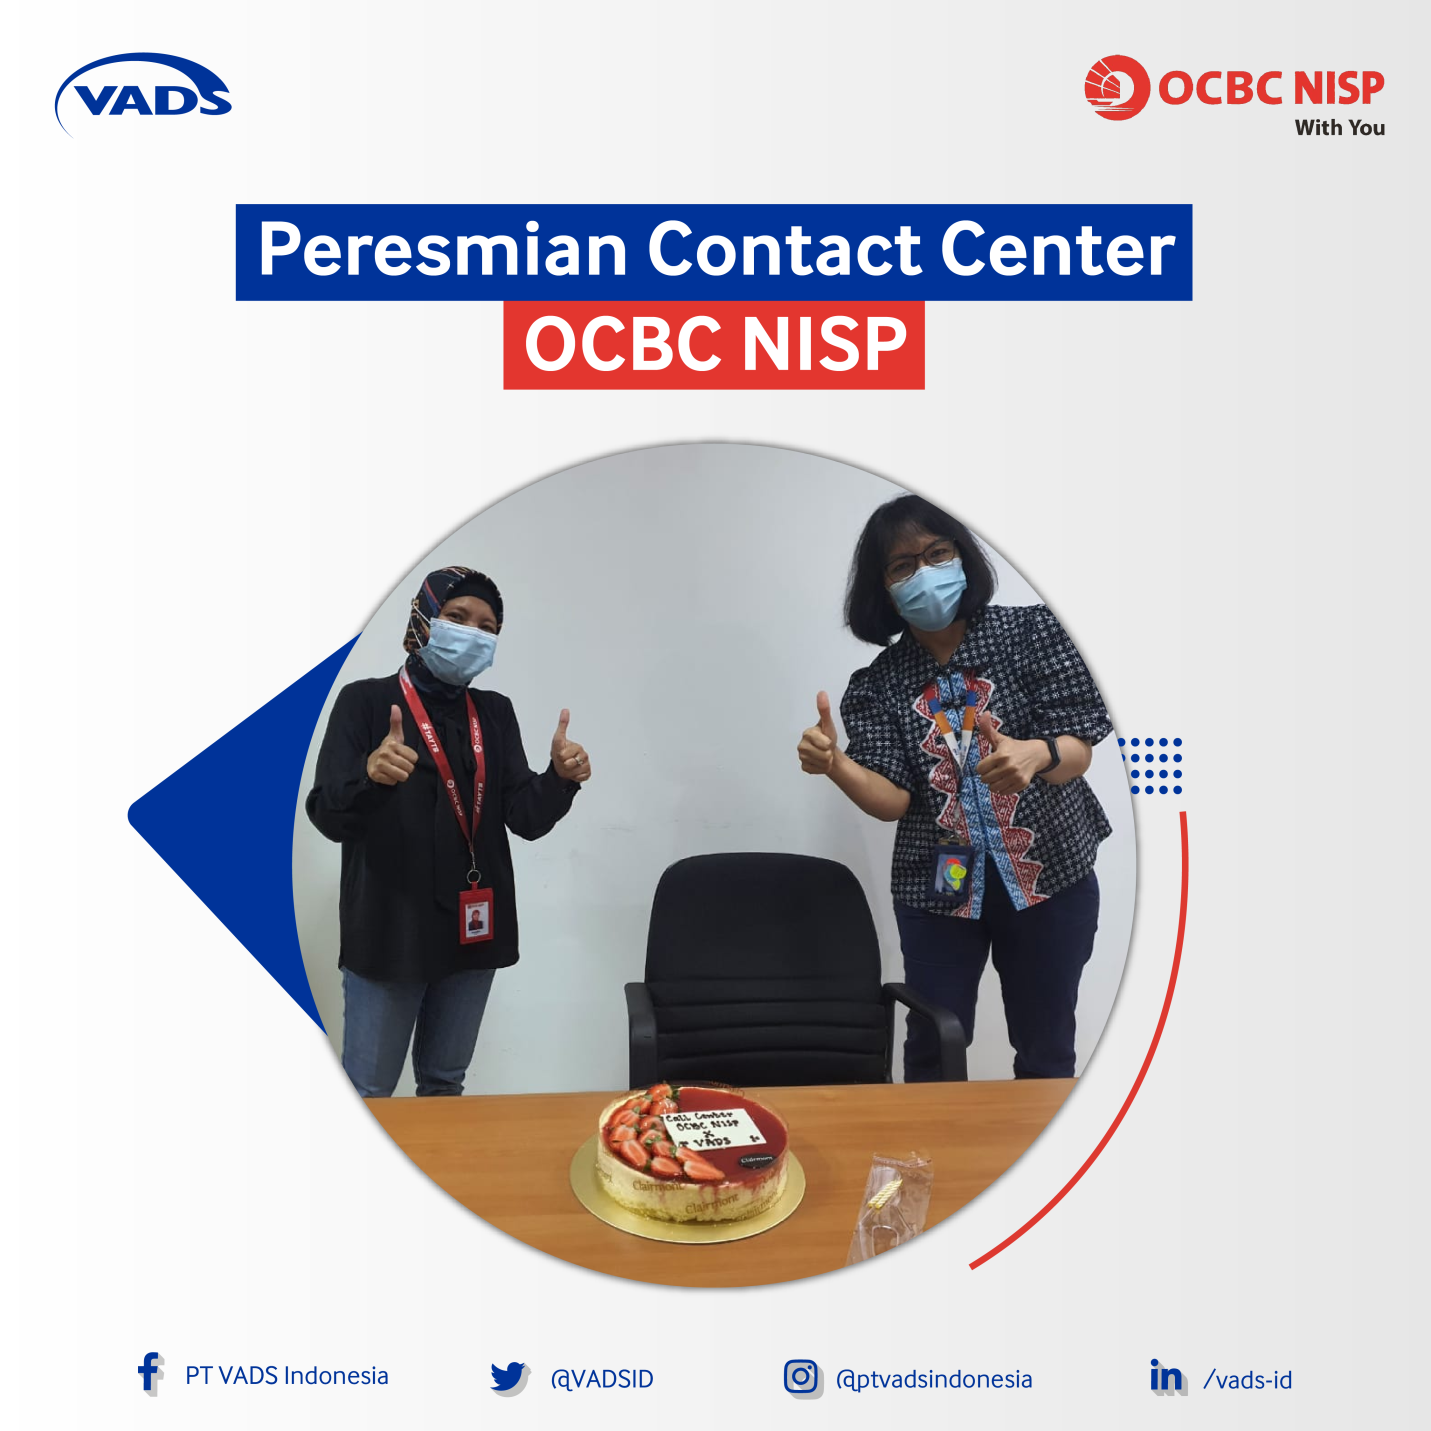 Image of Bank OCBC NISP Gandeng VADS Indonesia untuk Perkuat Layanan Contact Center 24 Jam 